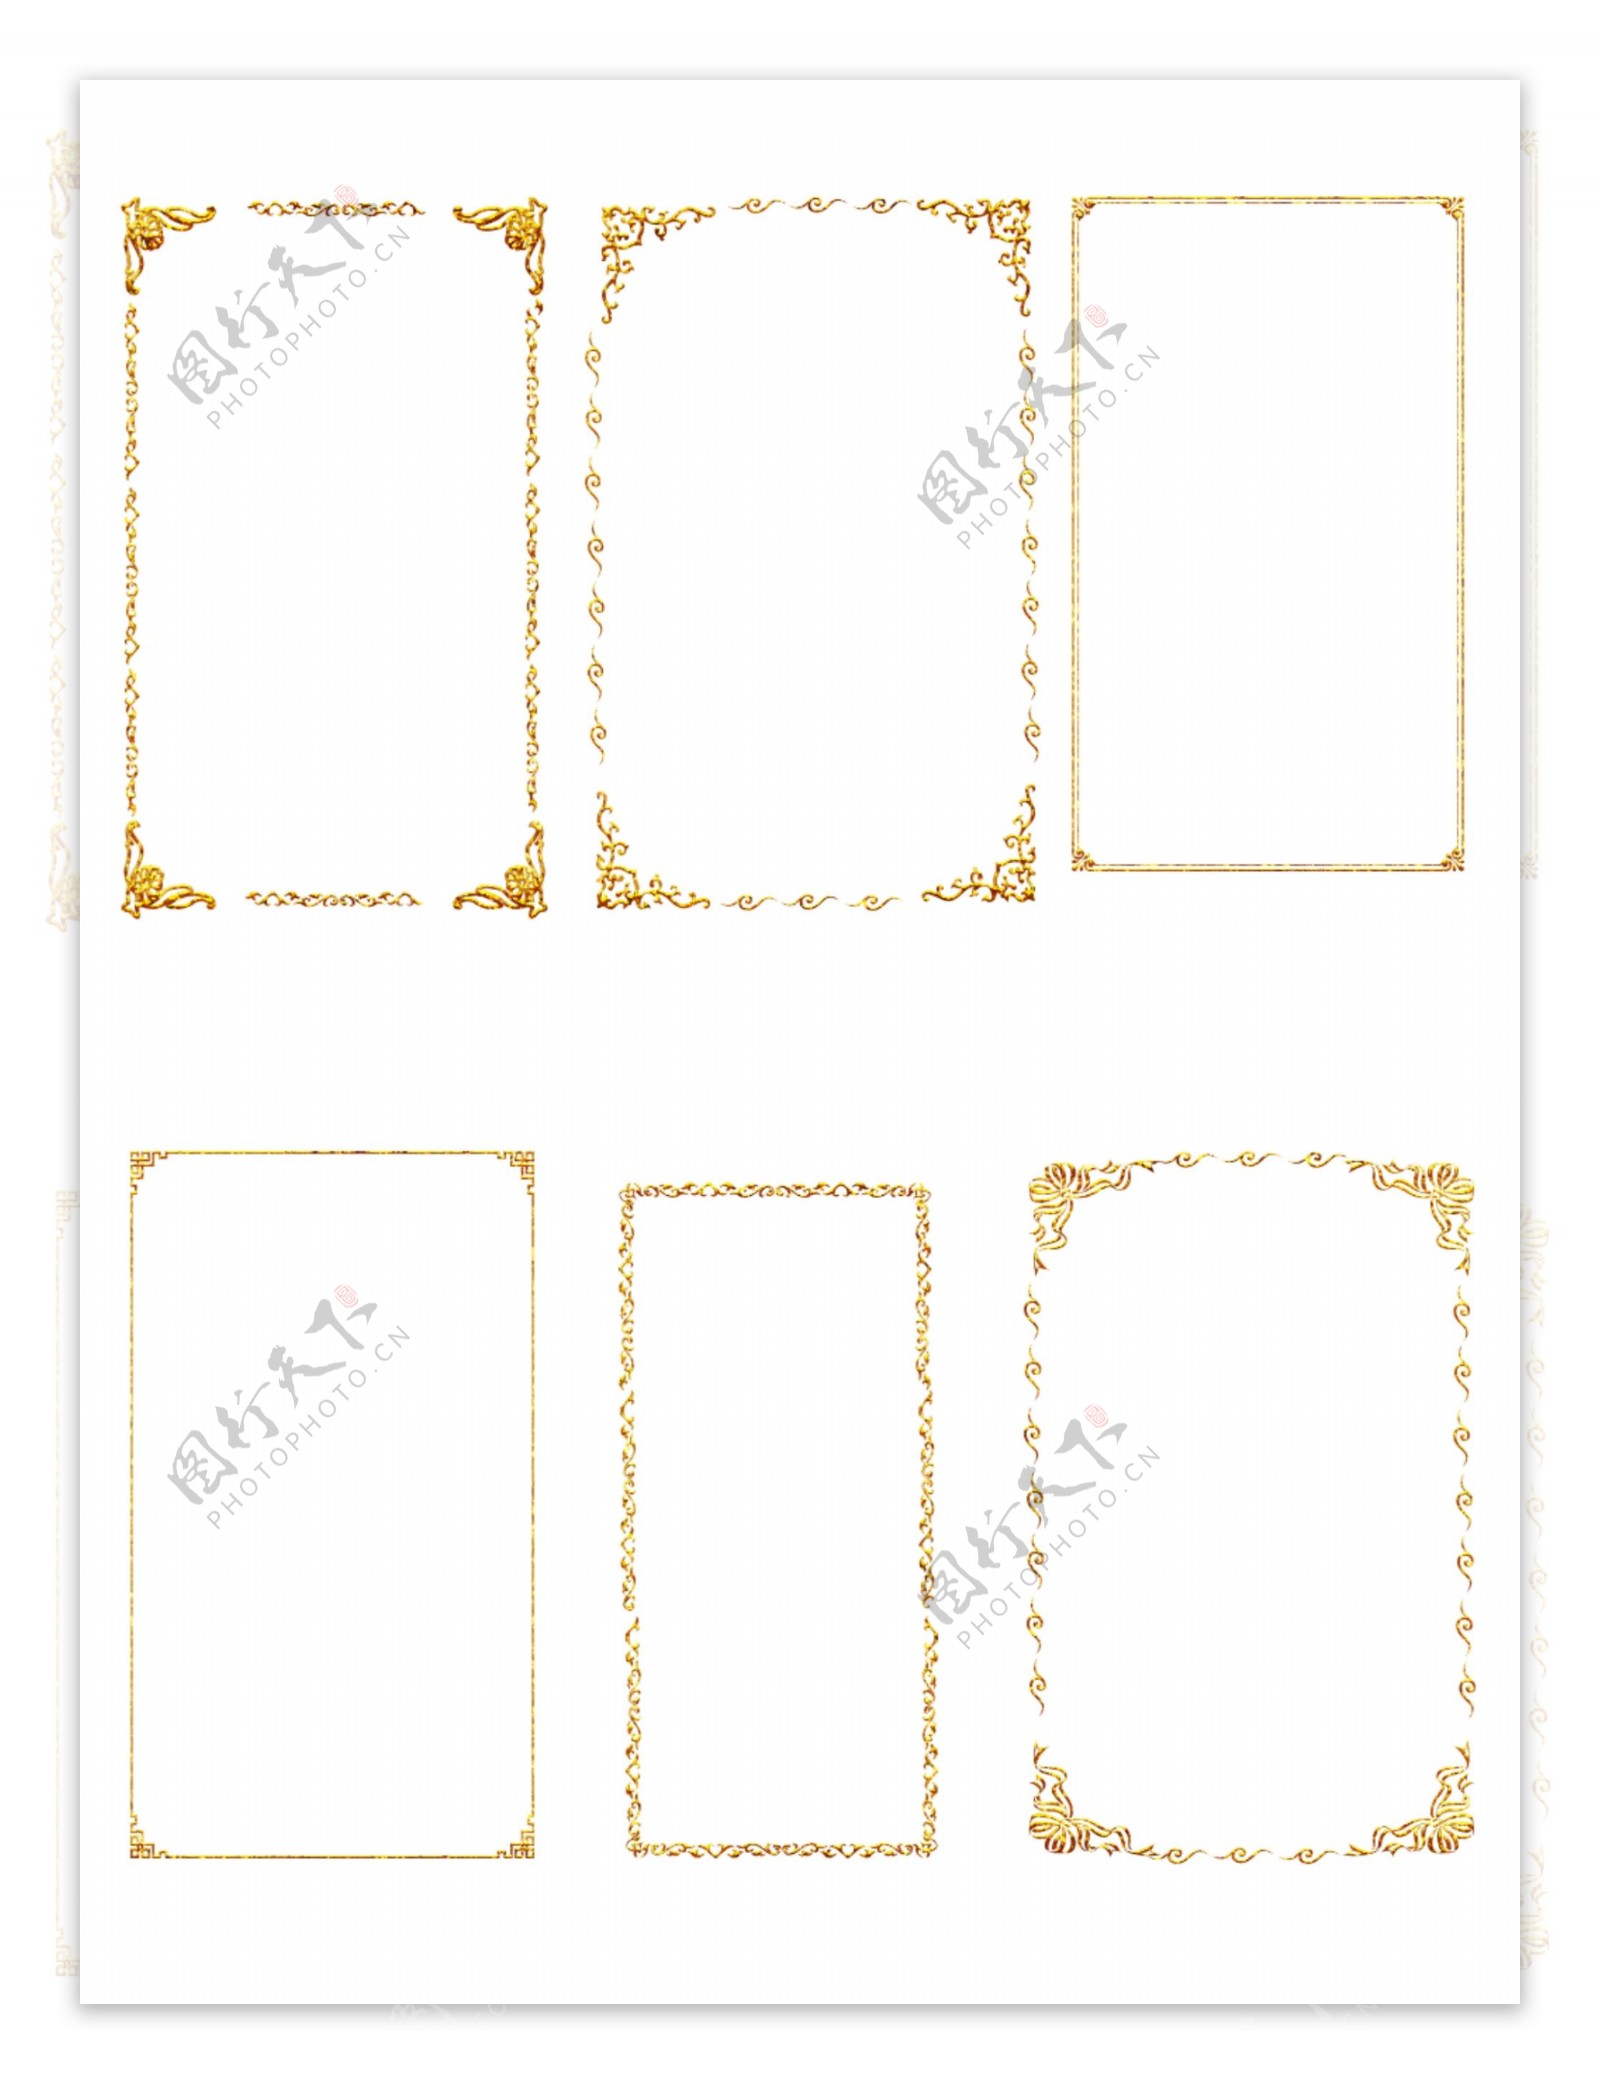 中国风边框古典花纹花边金色矢量可商用元素